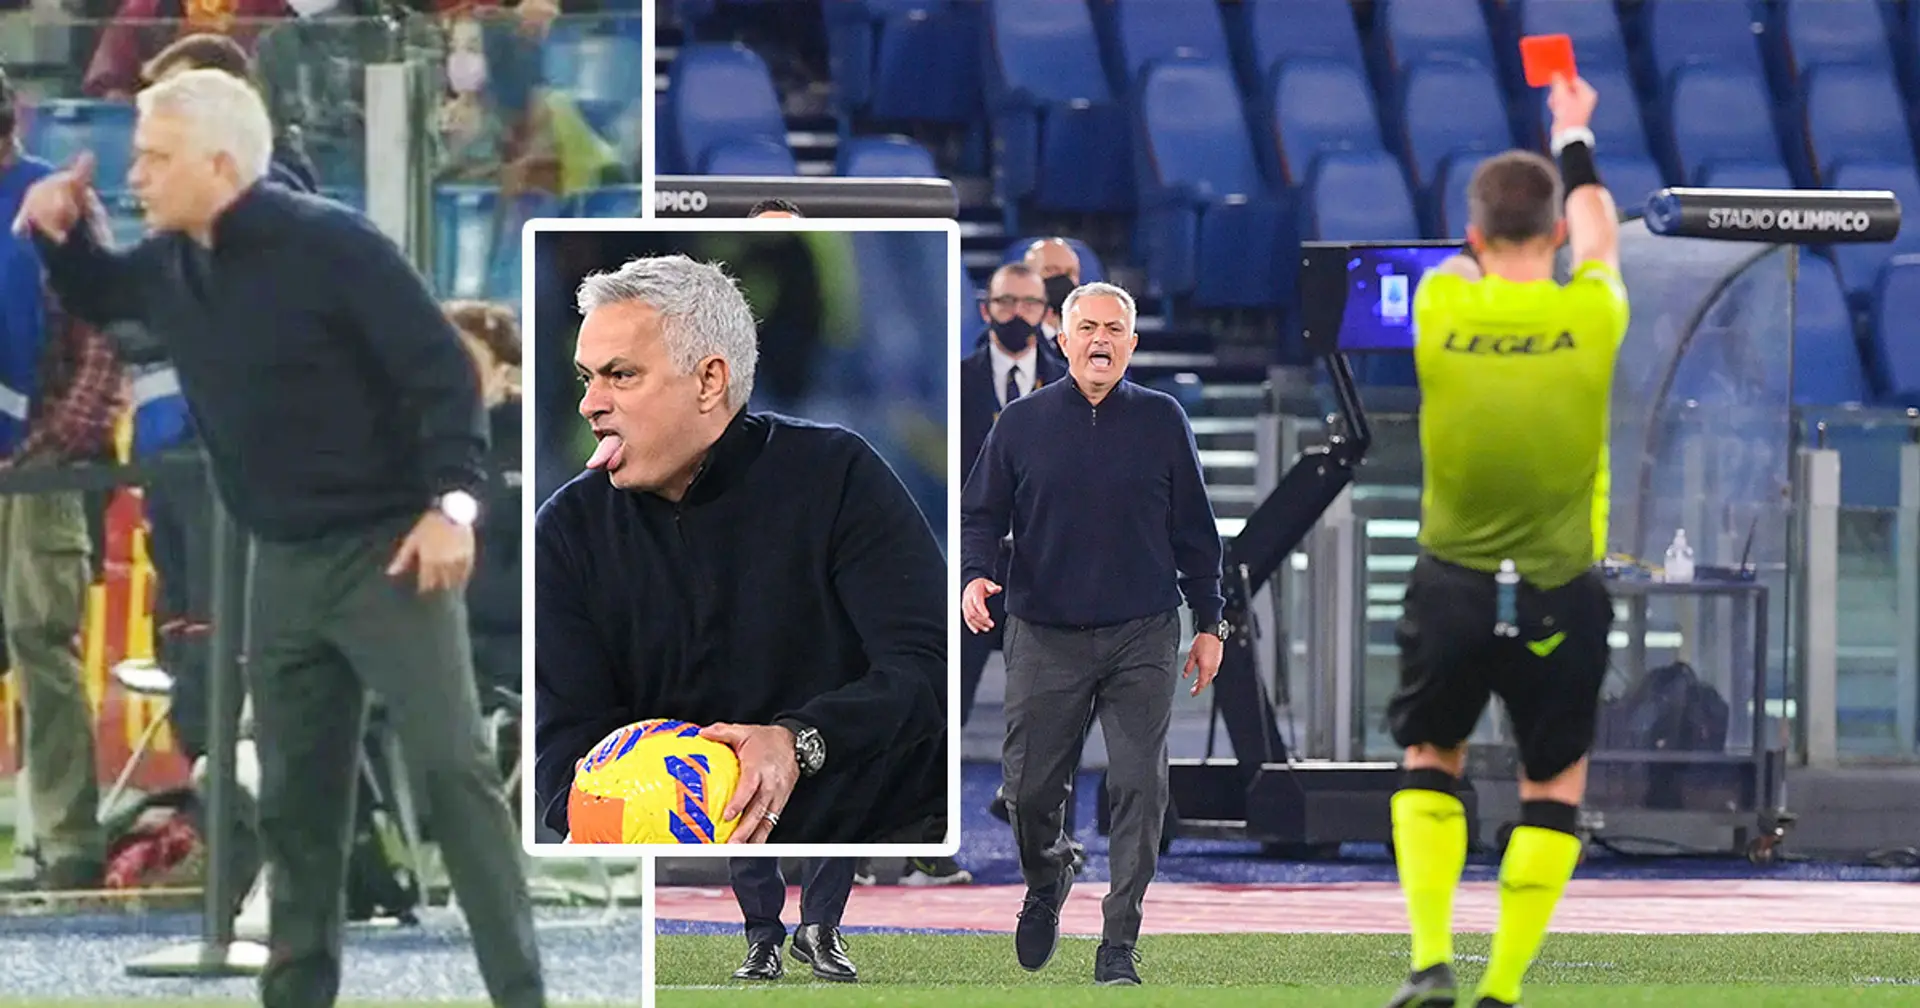 Jose Mourinho steht vor einer Sperre von 3 Spielen, da er dem Schiedsrichter gesagt haben soll: "Juventus hat dich geschickt"